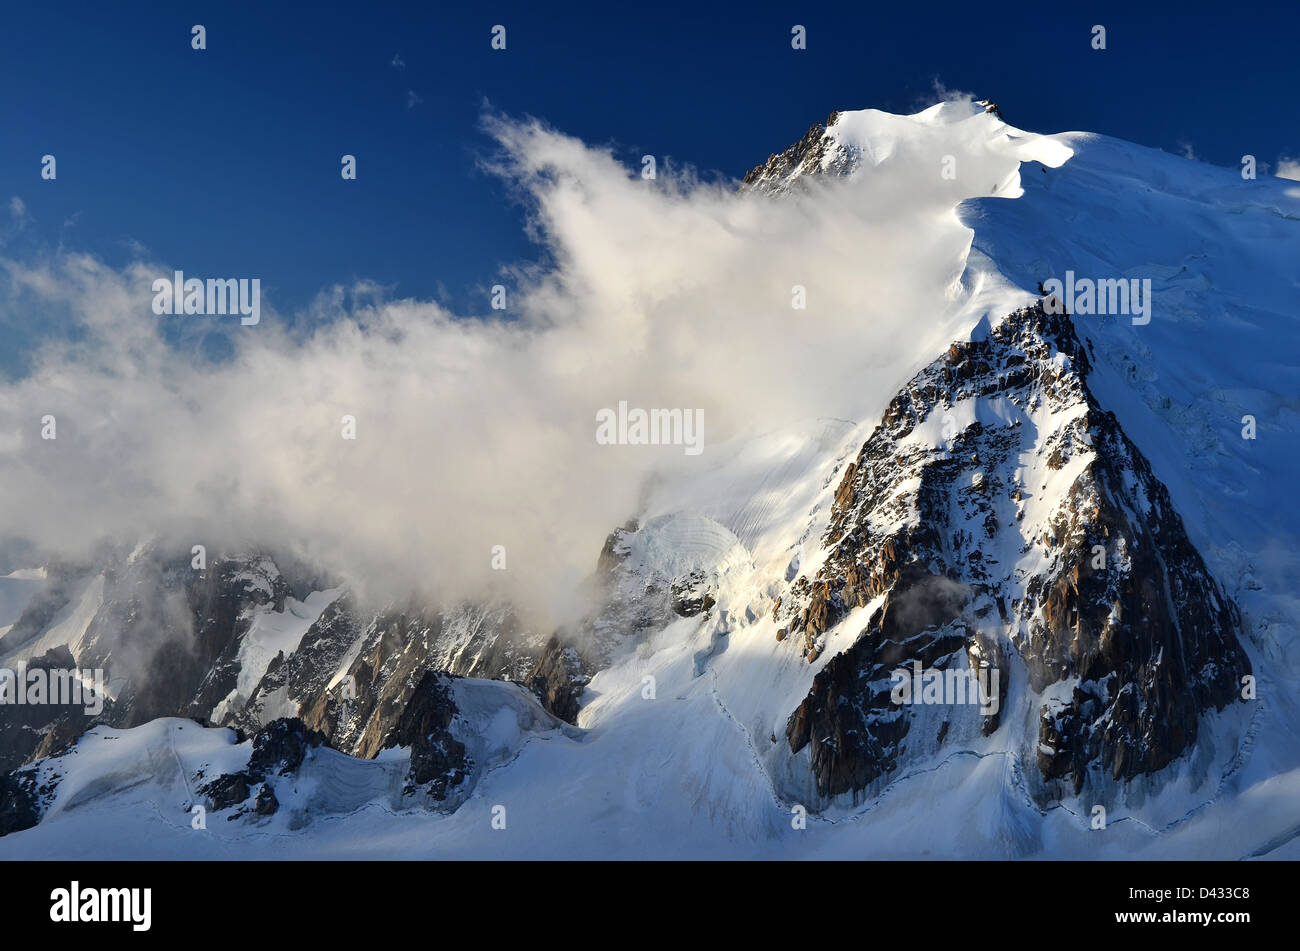 Mont Blanc du Tacul una delle cime più alte delle Alpi, Francia. Chamonix. Foto Stock